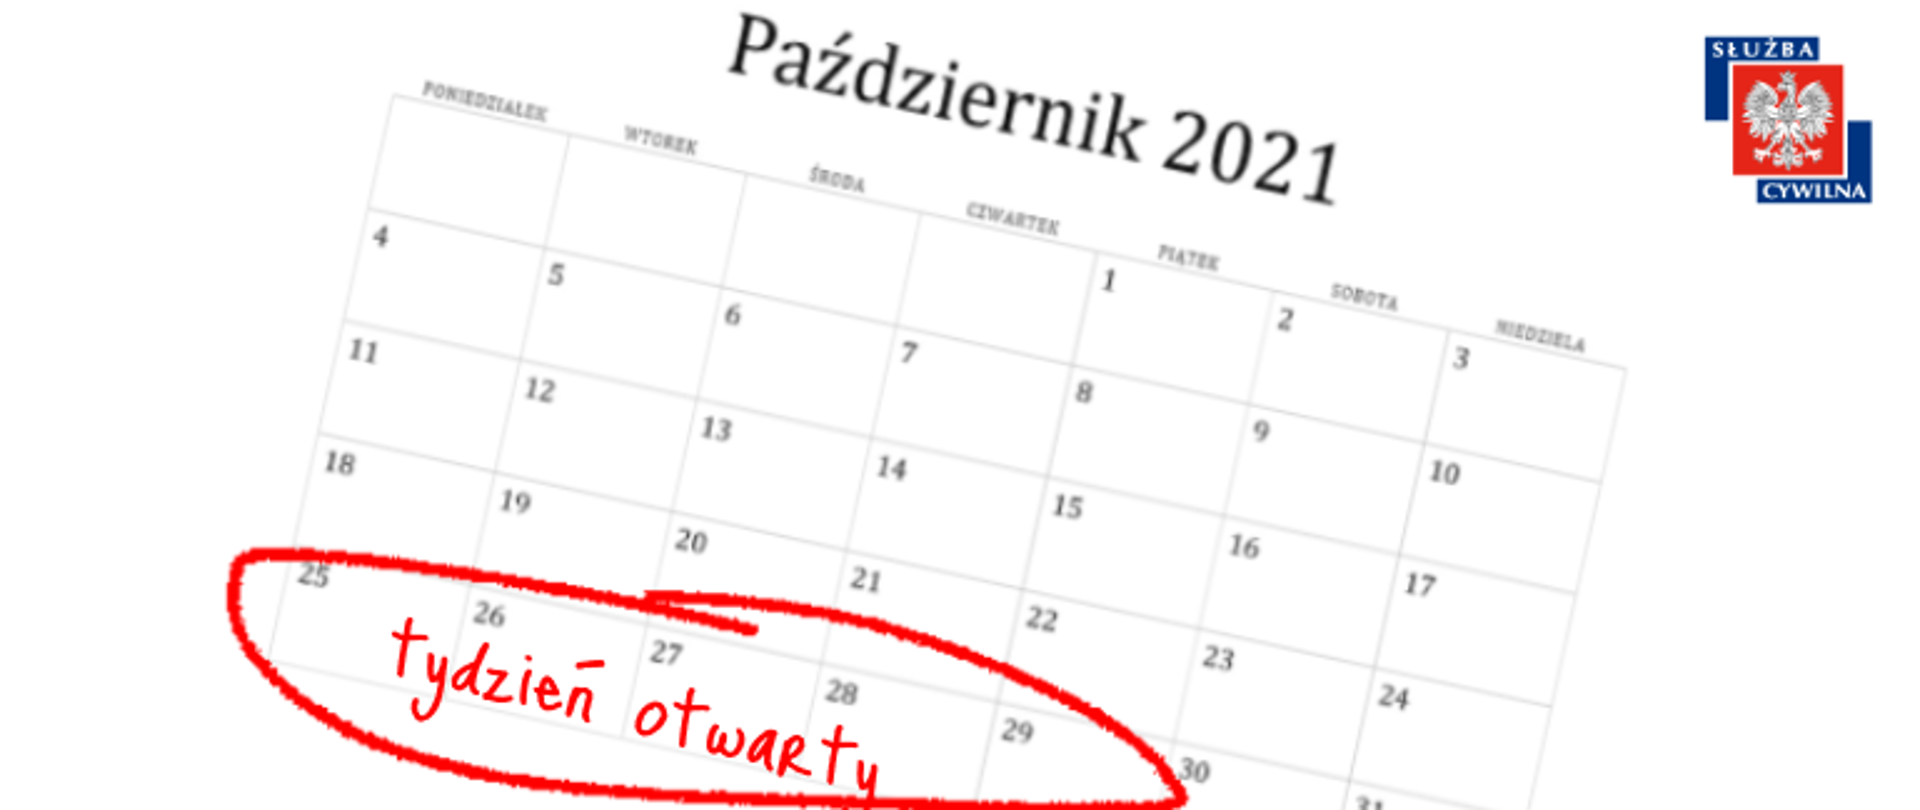 Kartka z kalendarza na październik 2021, dni od 25 do 29 zaznaczone czerwonym flamastrem oraz napisem tydzień otwarty